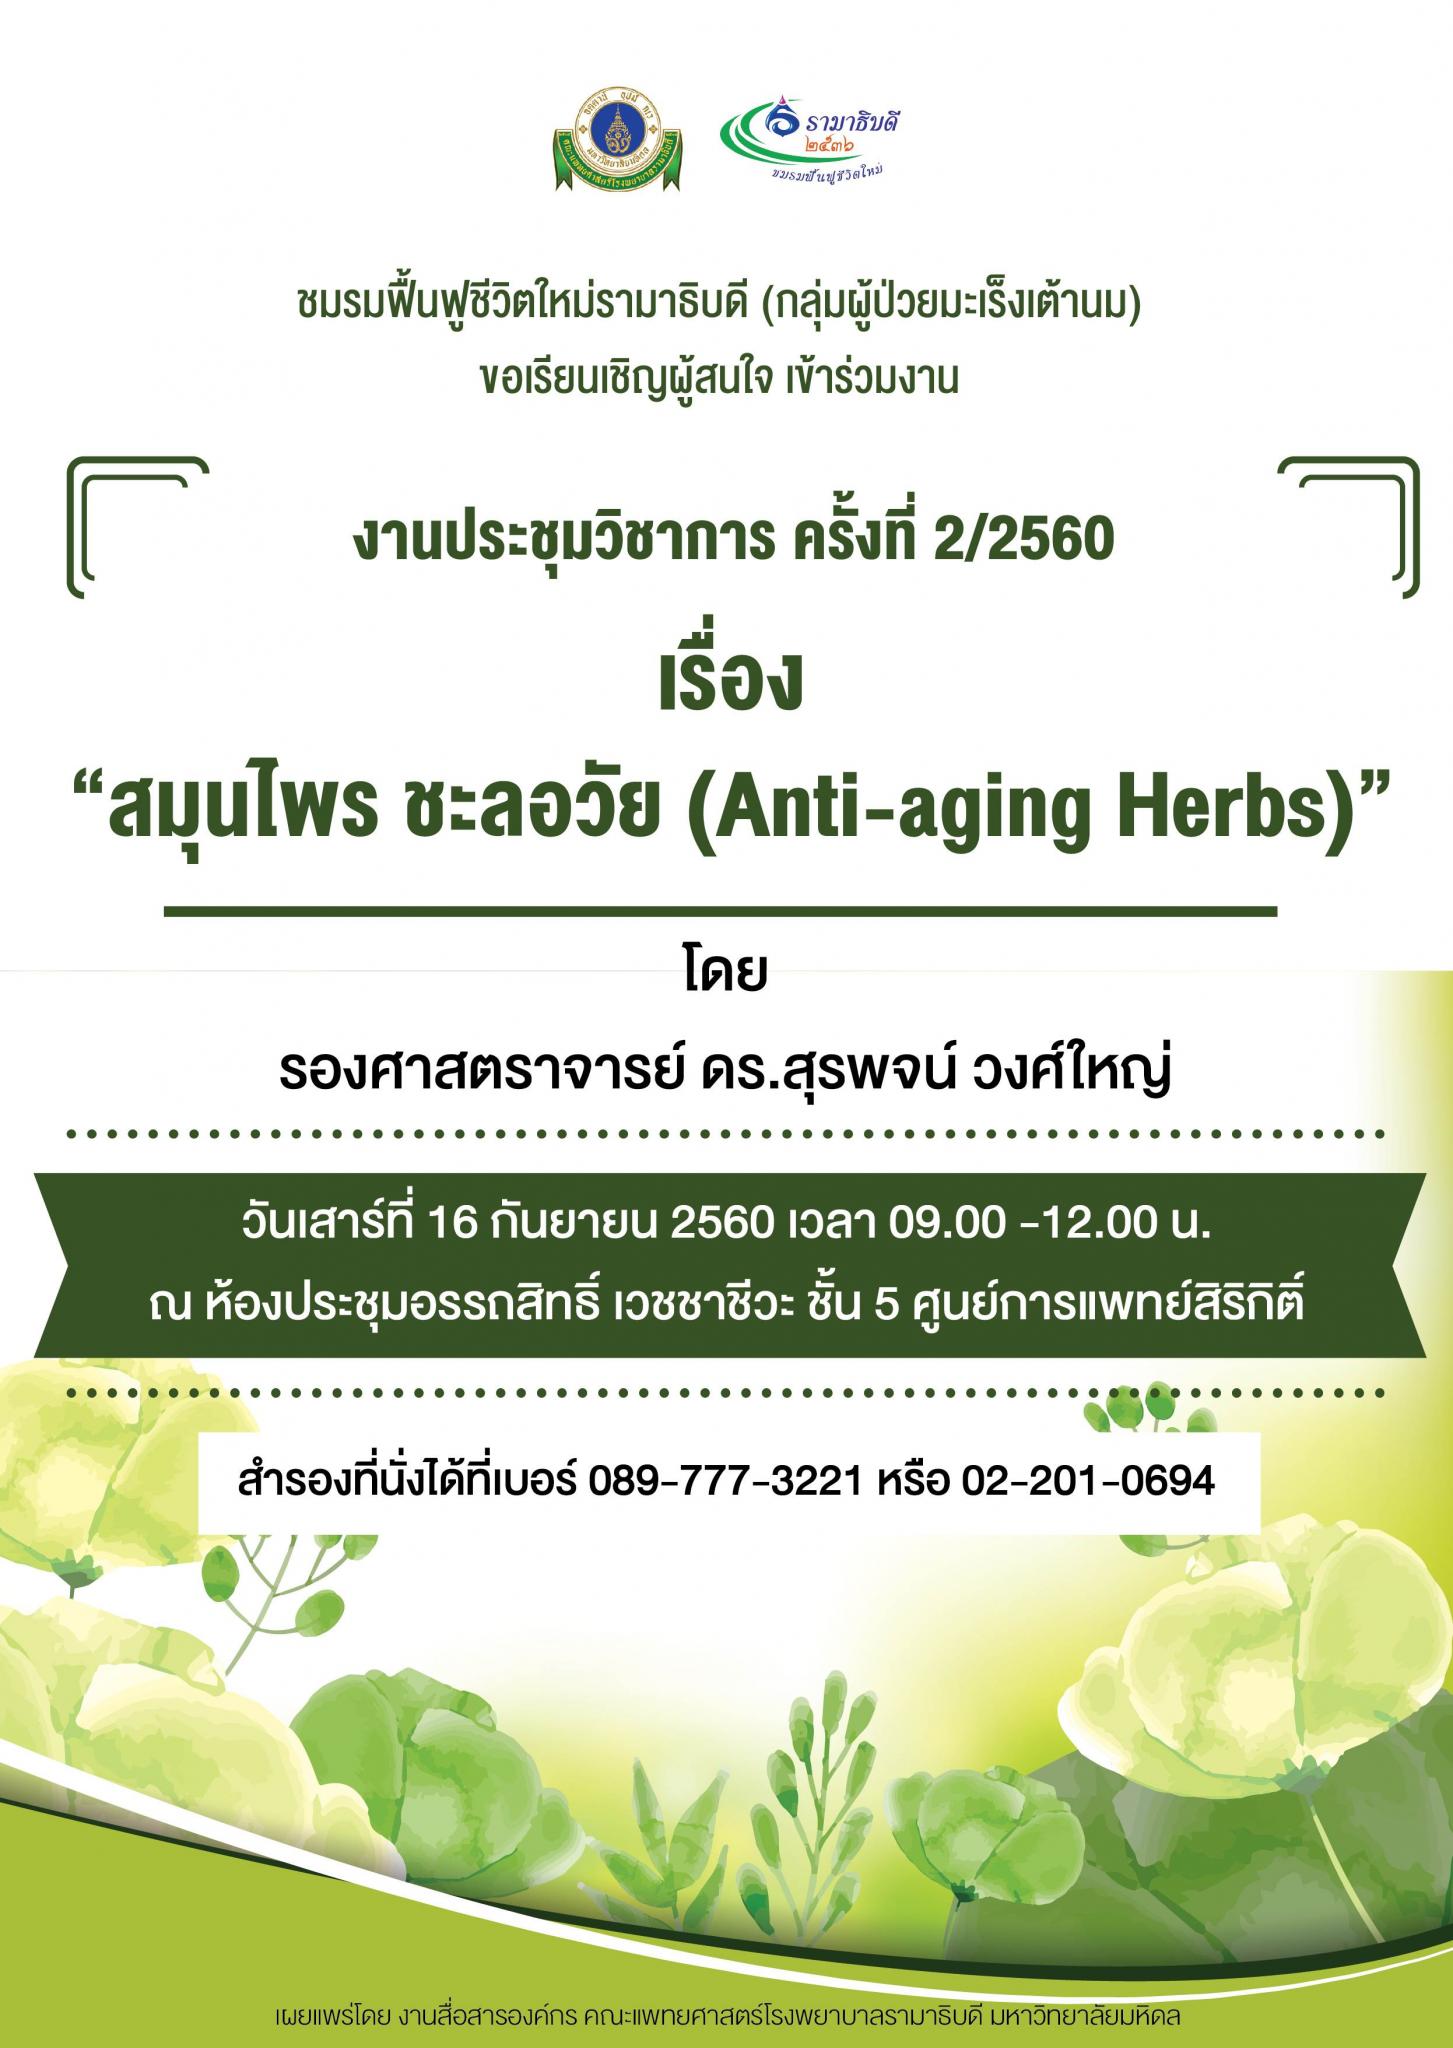 ขอเชิญเข้าร่วมงาน งานประชุมวิชาการ ครั้งที่ 2/2560 เรื่อง "สมุนไพร ชะลอวัย (Anti-aging Herbs)"